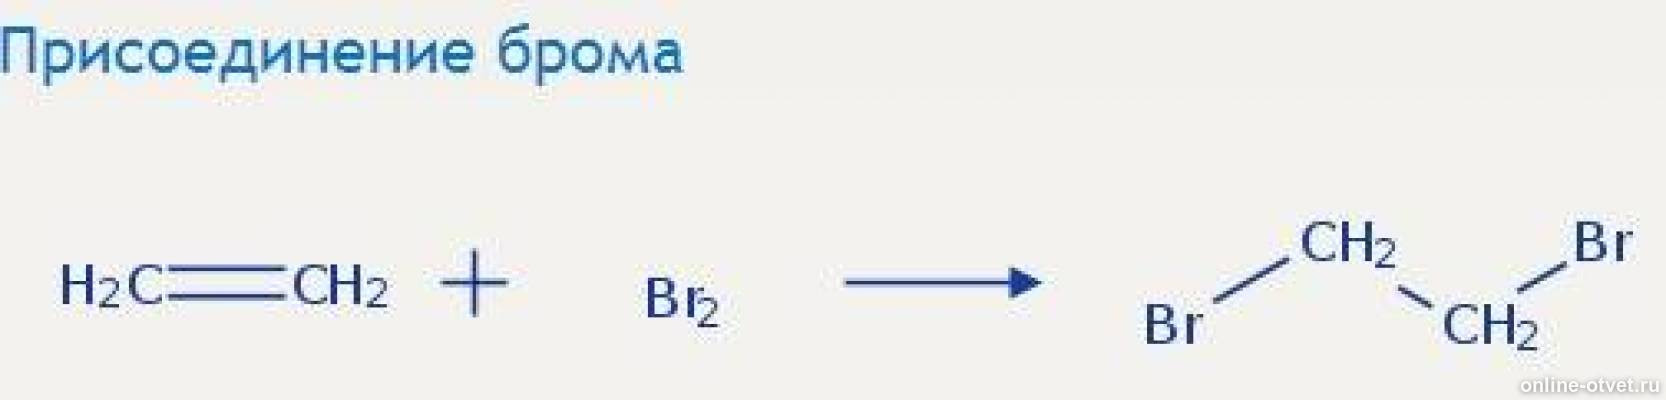 Ацетилен дихлорэтан реакция. Присоединение брома. Этанол+CL. Реакция присоединения брома. C2h4 = диэтиловый эфир.